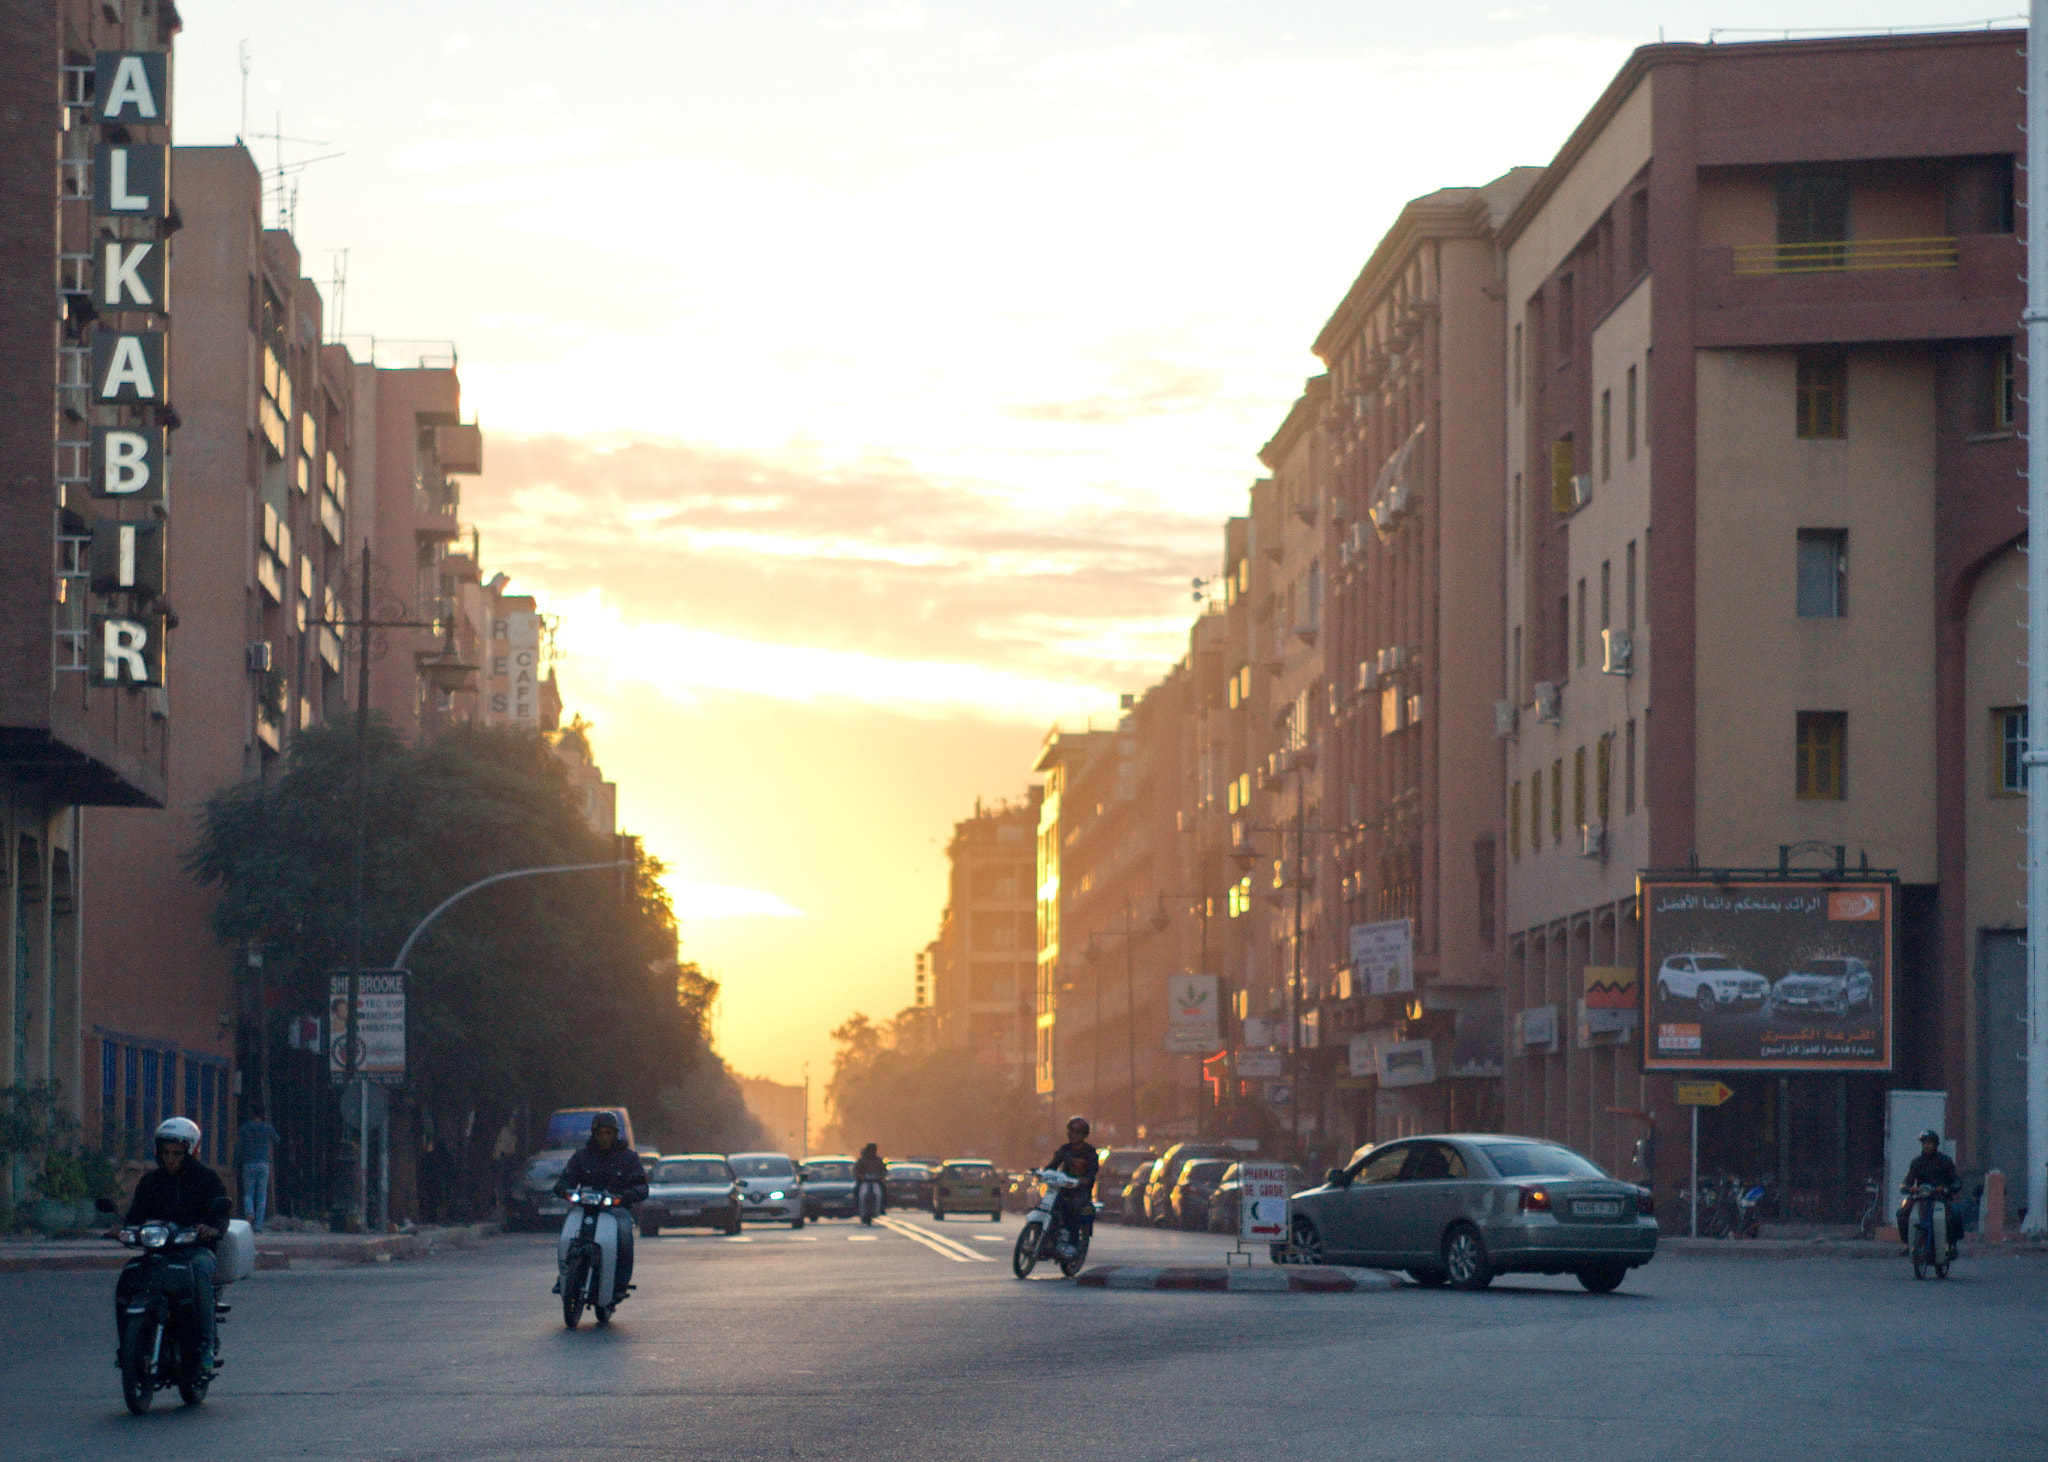 Sony Alpha DSLR-A700 sample photo. Marrakech sunset photography